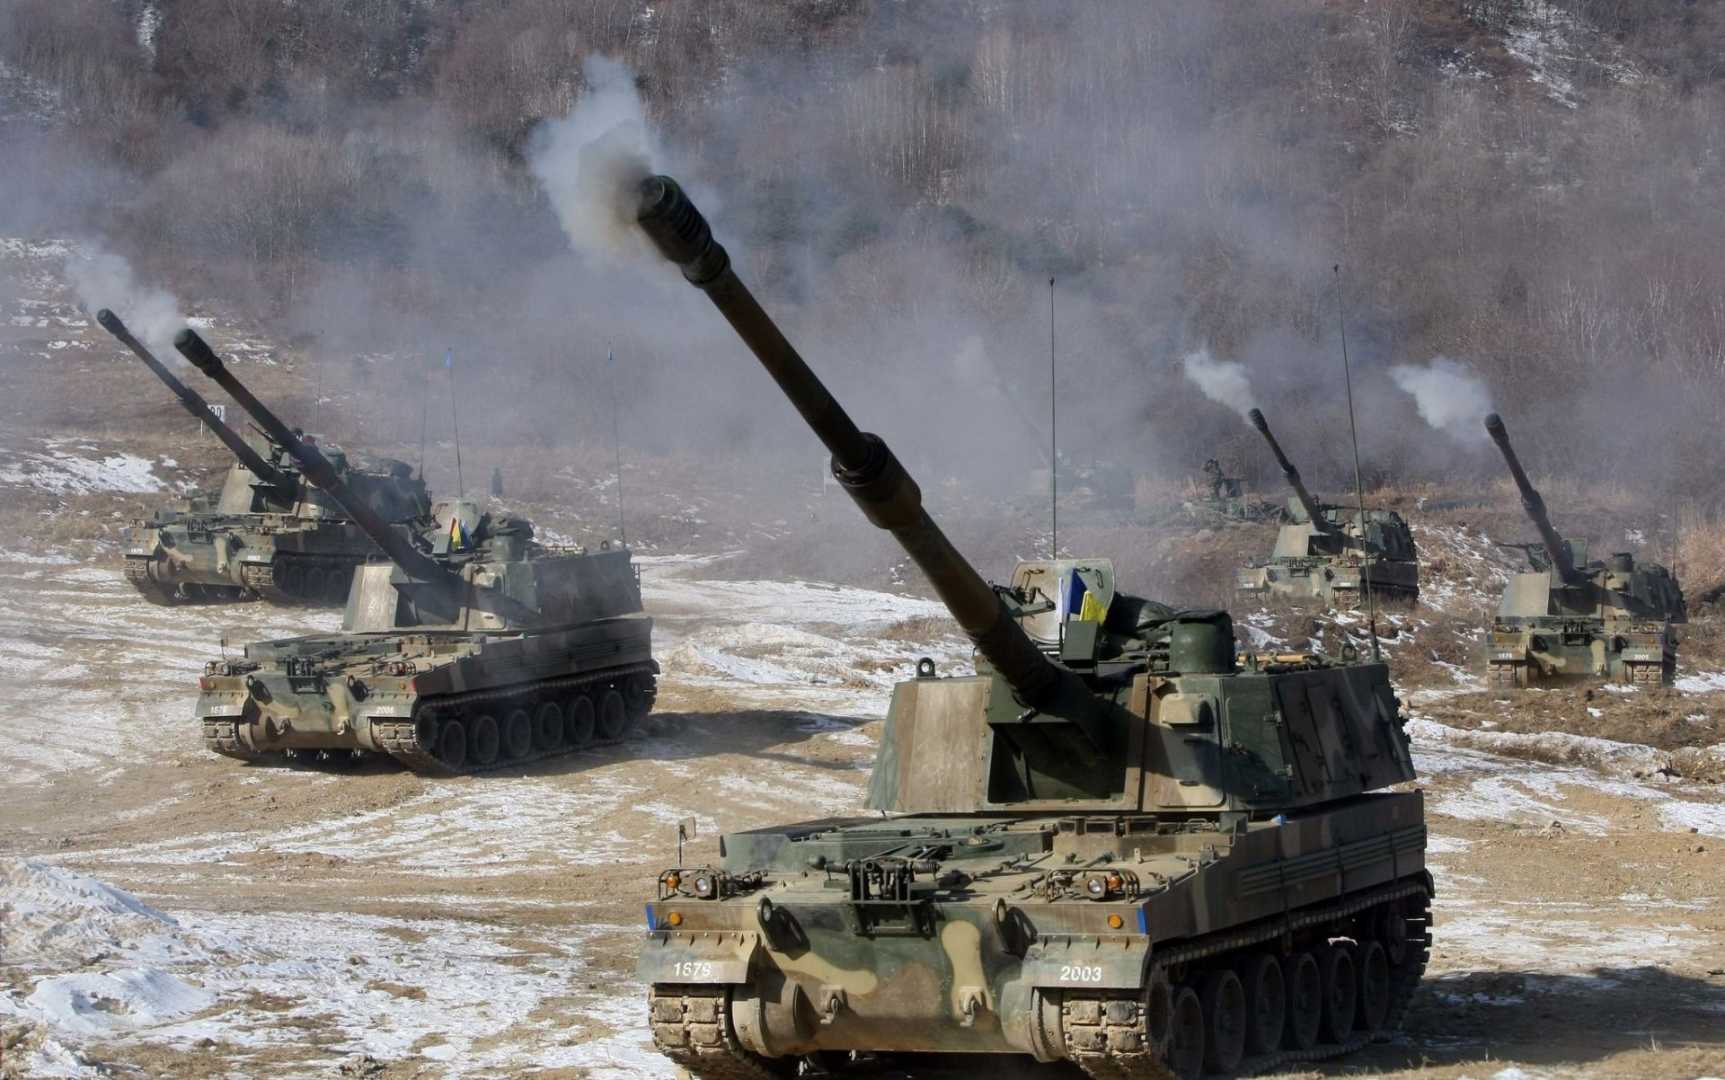 K-9 Artillery